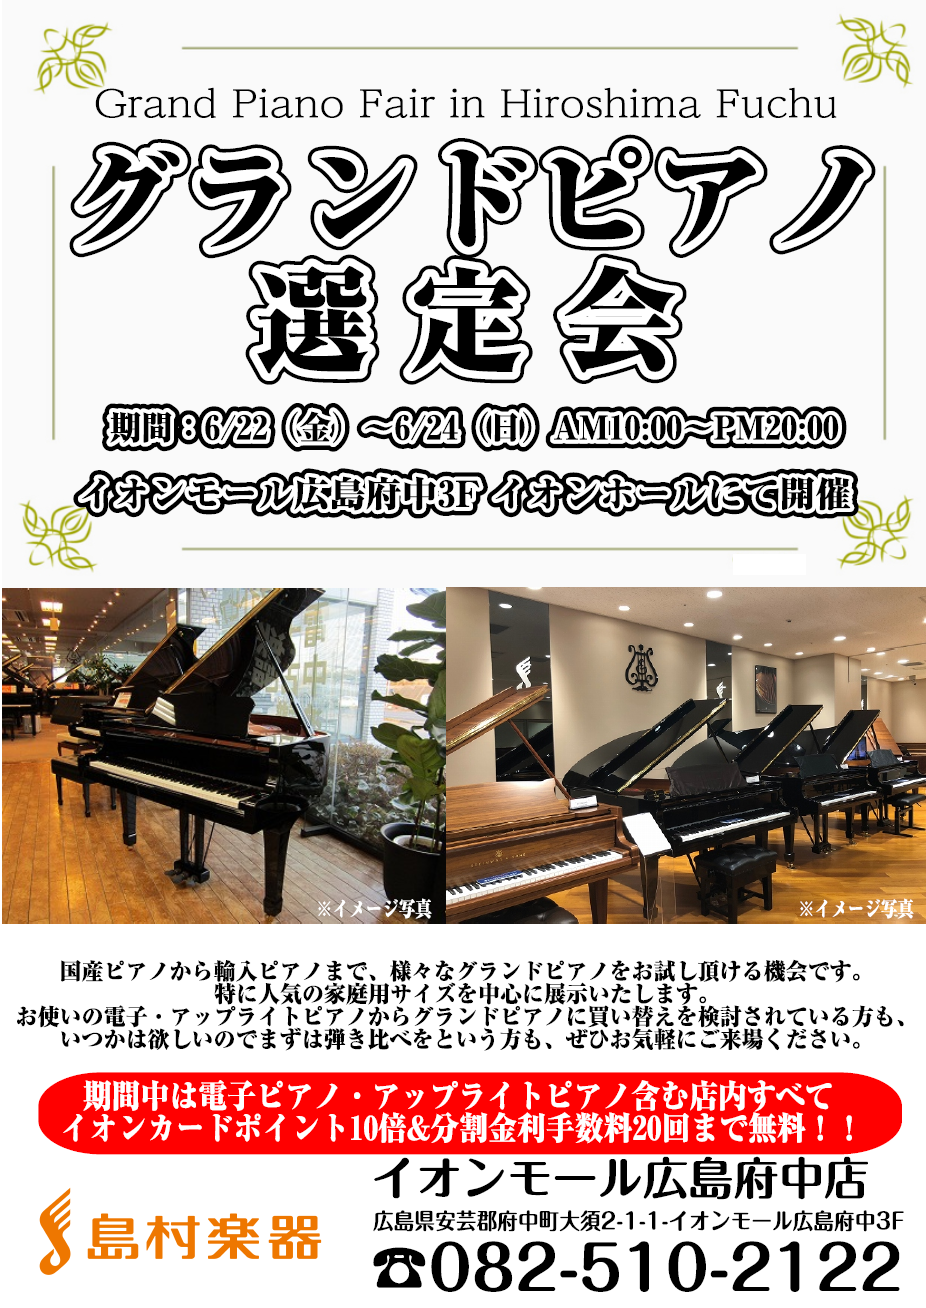 イオンモール広島府中店「グランドピアノ展示会」開催のお知らせ